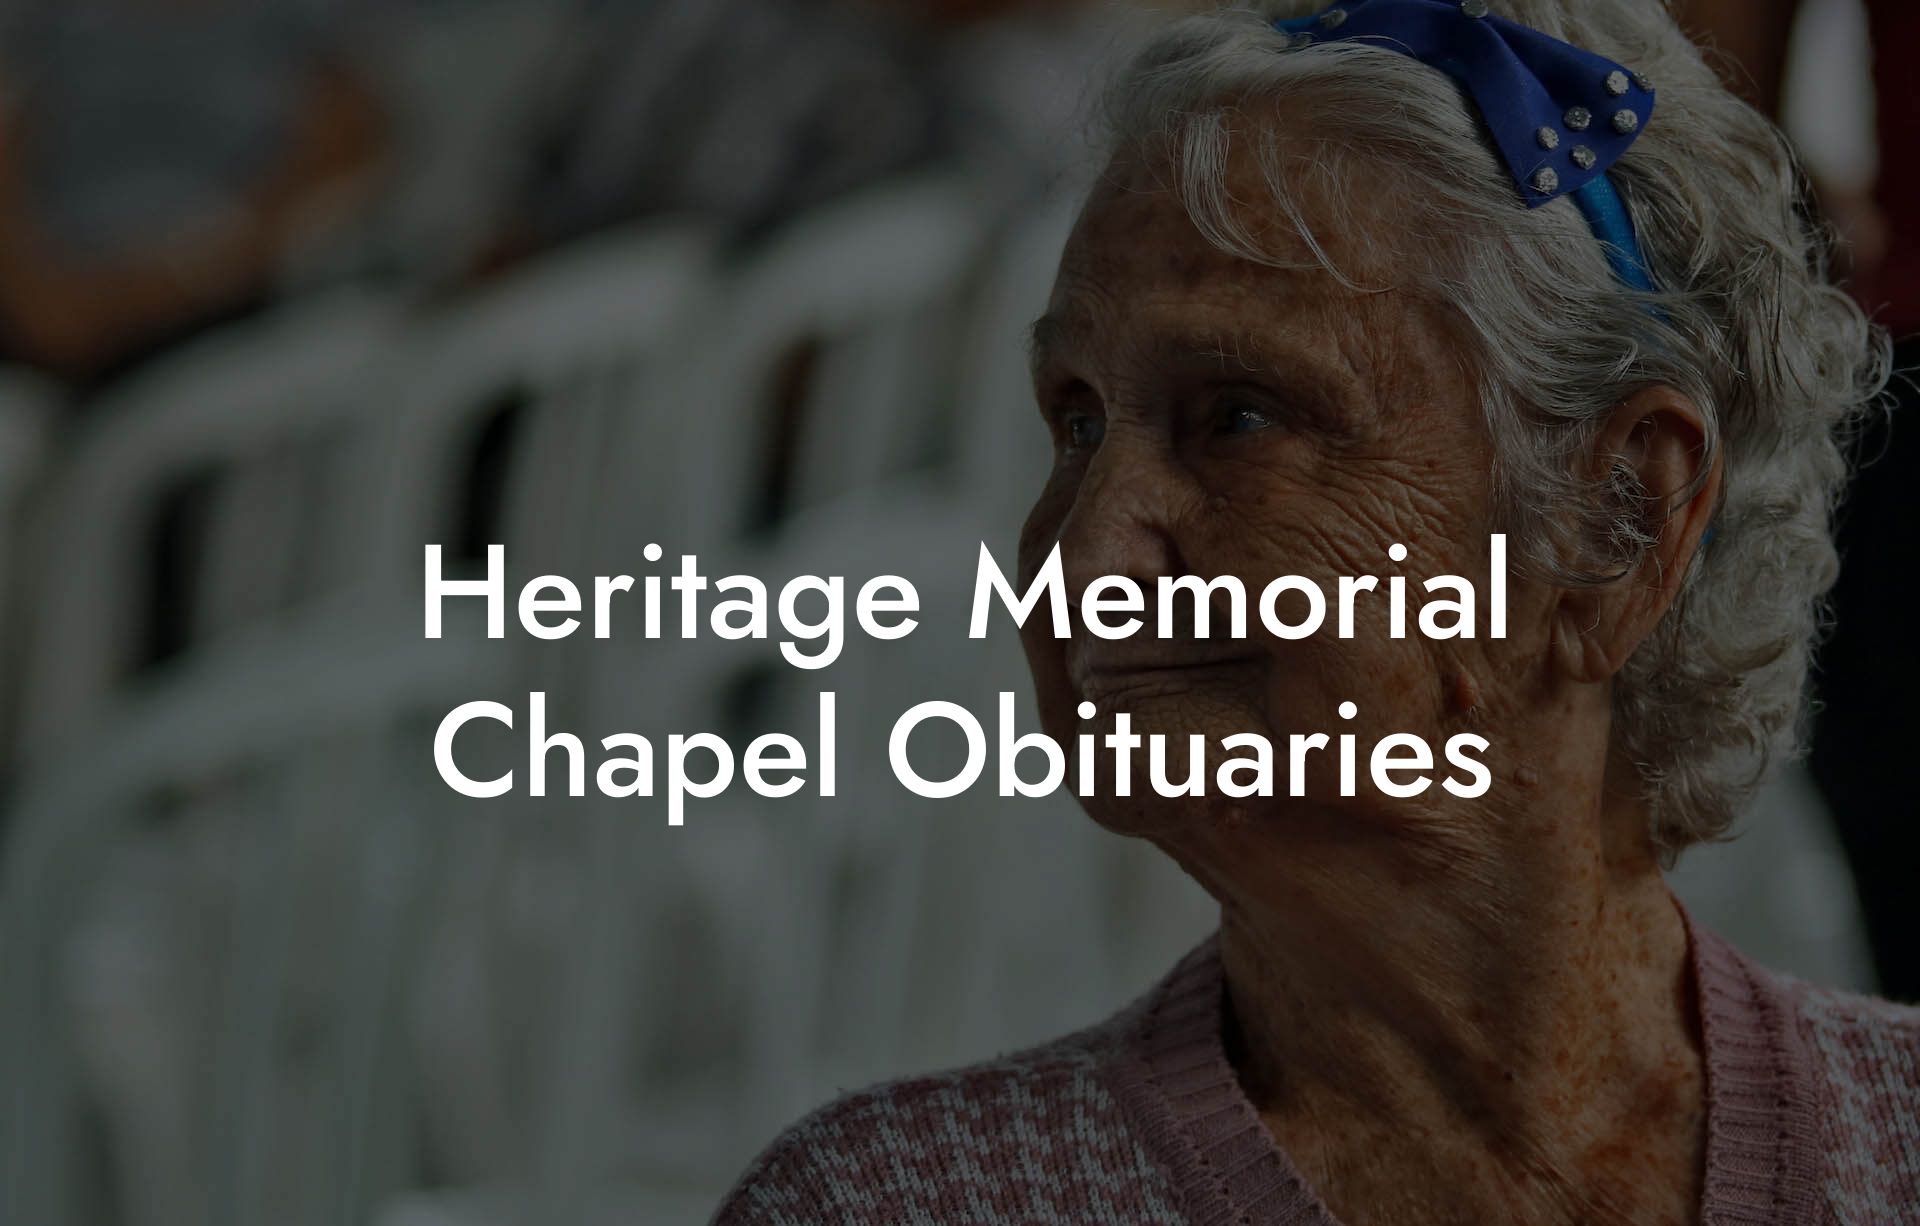 Heritage Memorial Chapel Obituaries